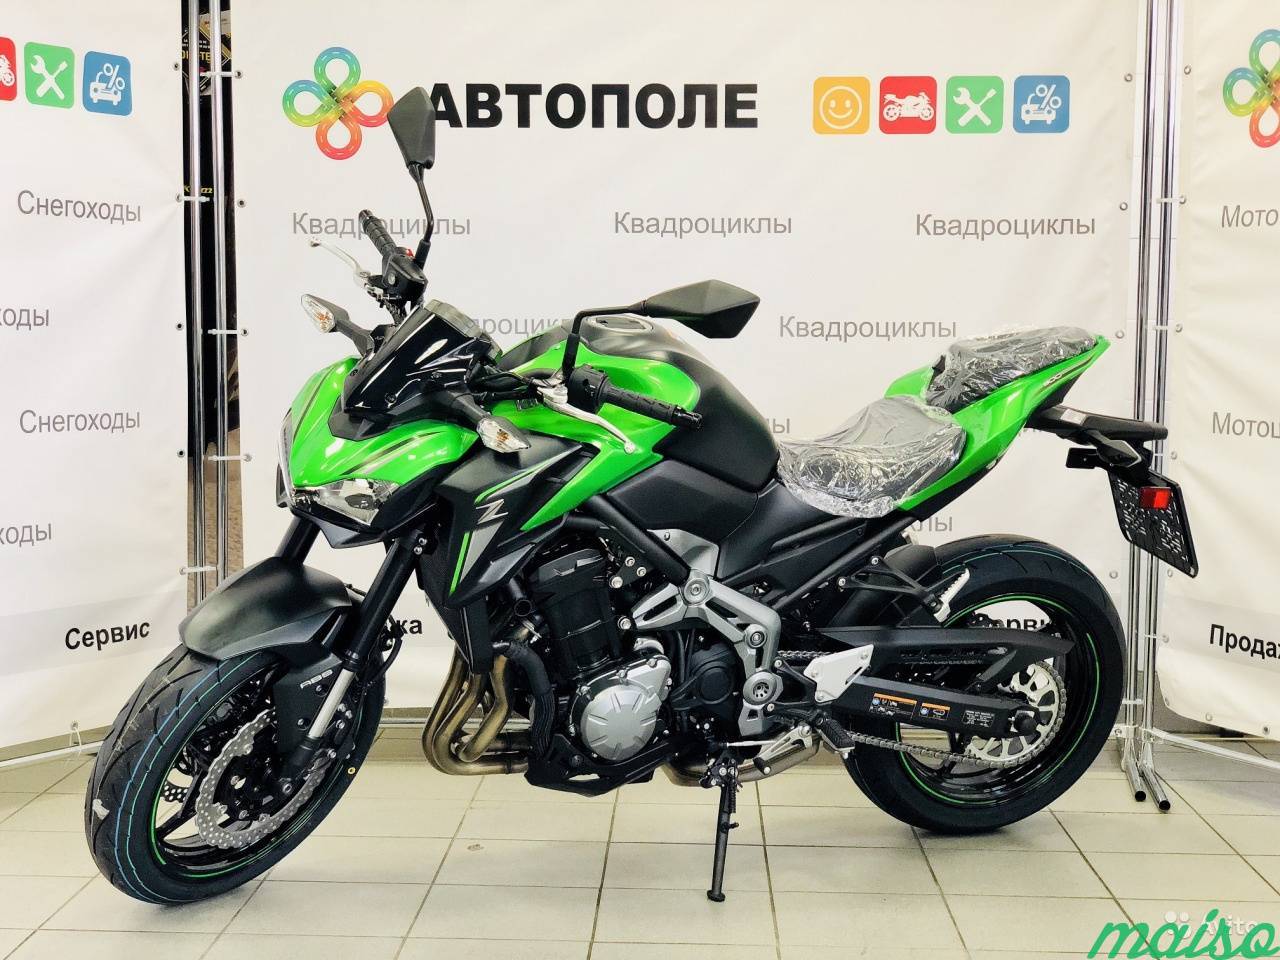 Мотоцикл Kawasaki Z900 2019 в Санкт-Петербурге. Фото 1